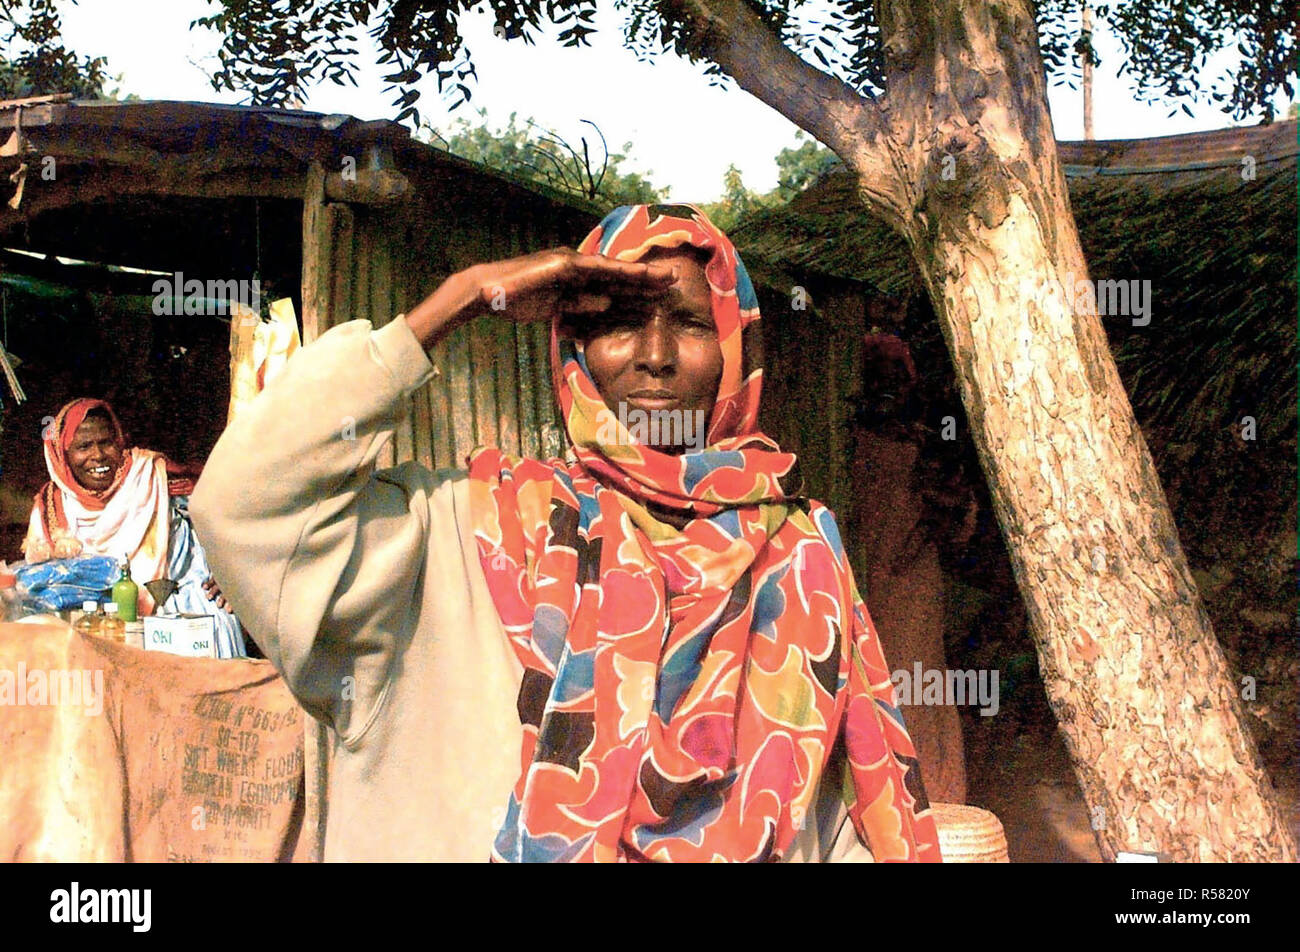 1993 - dritto sulla ripresa di una donna somala dalla vita fino a che essa rende un omaggio per mostrare il suo supporto per le forze americane (non mostrato) in Somalia a sostegno di funzionamento continua a sperare. La fotografia è stata scattata nella zona del mercato di Kismayo, Somalia. Un'altra donna somala è visibile a sinistra in background e lei sta ridendo. Foto Stock